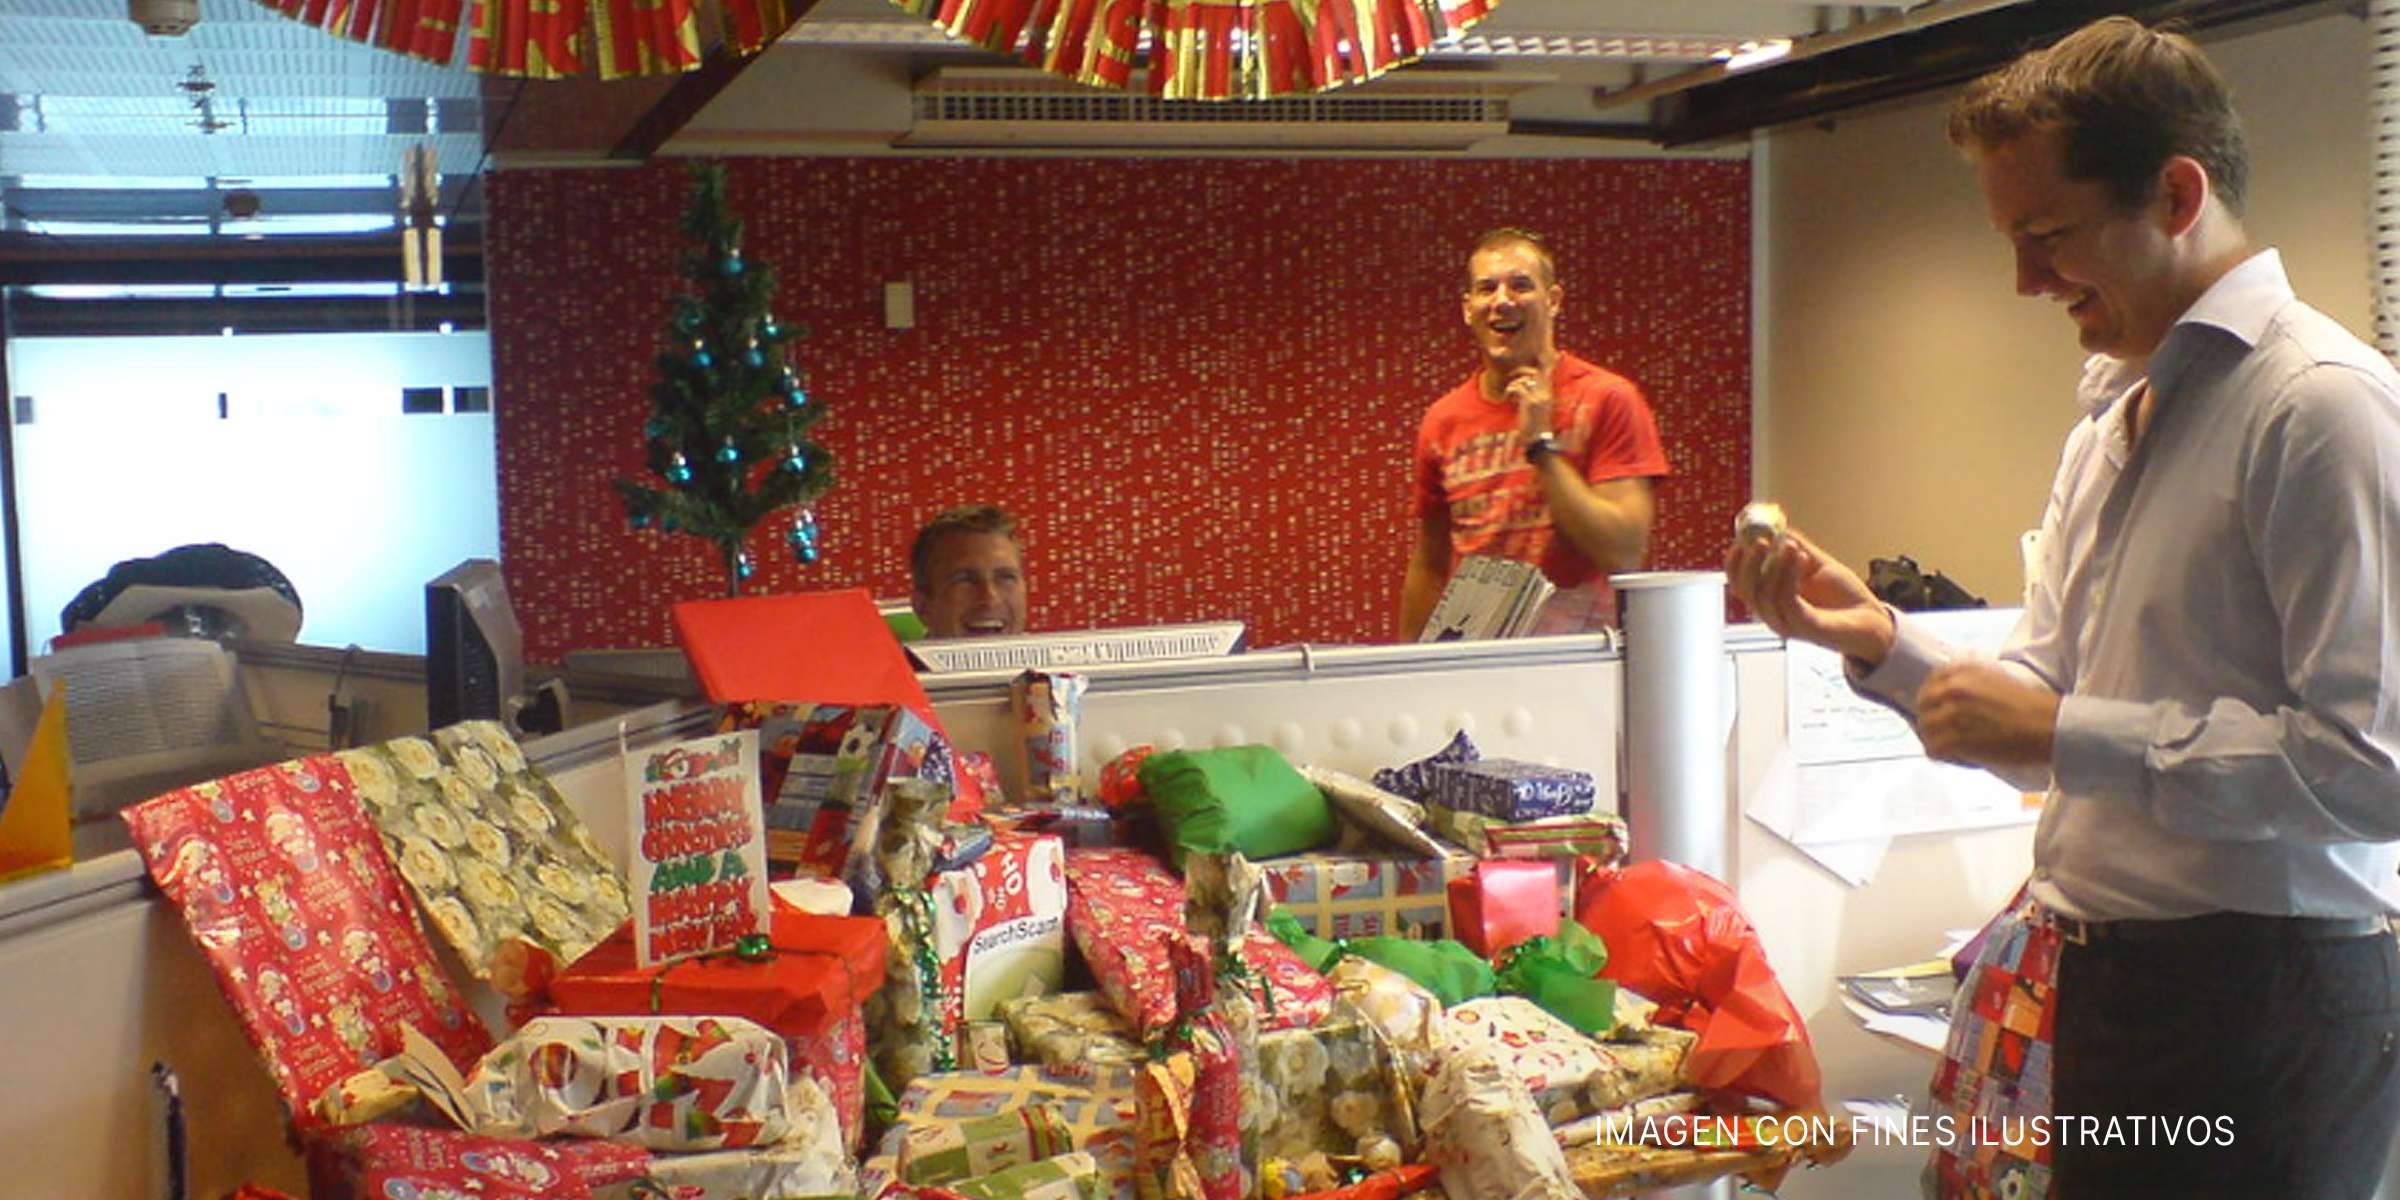 Hombre contemplando muchos regalos de Navidad sobre un escritorio | Foto: Flickr.com/AussieGold (CC BY 2.0)